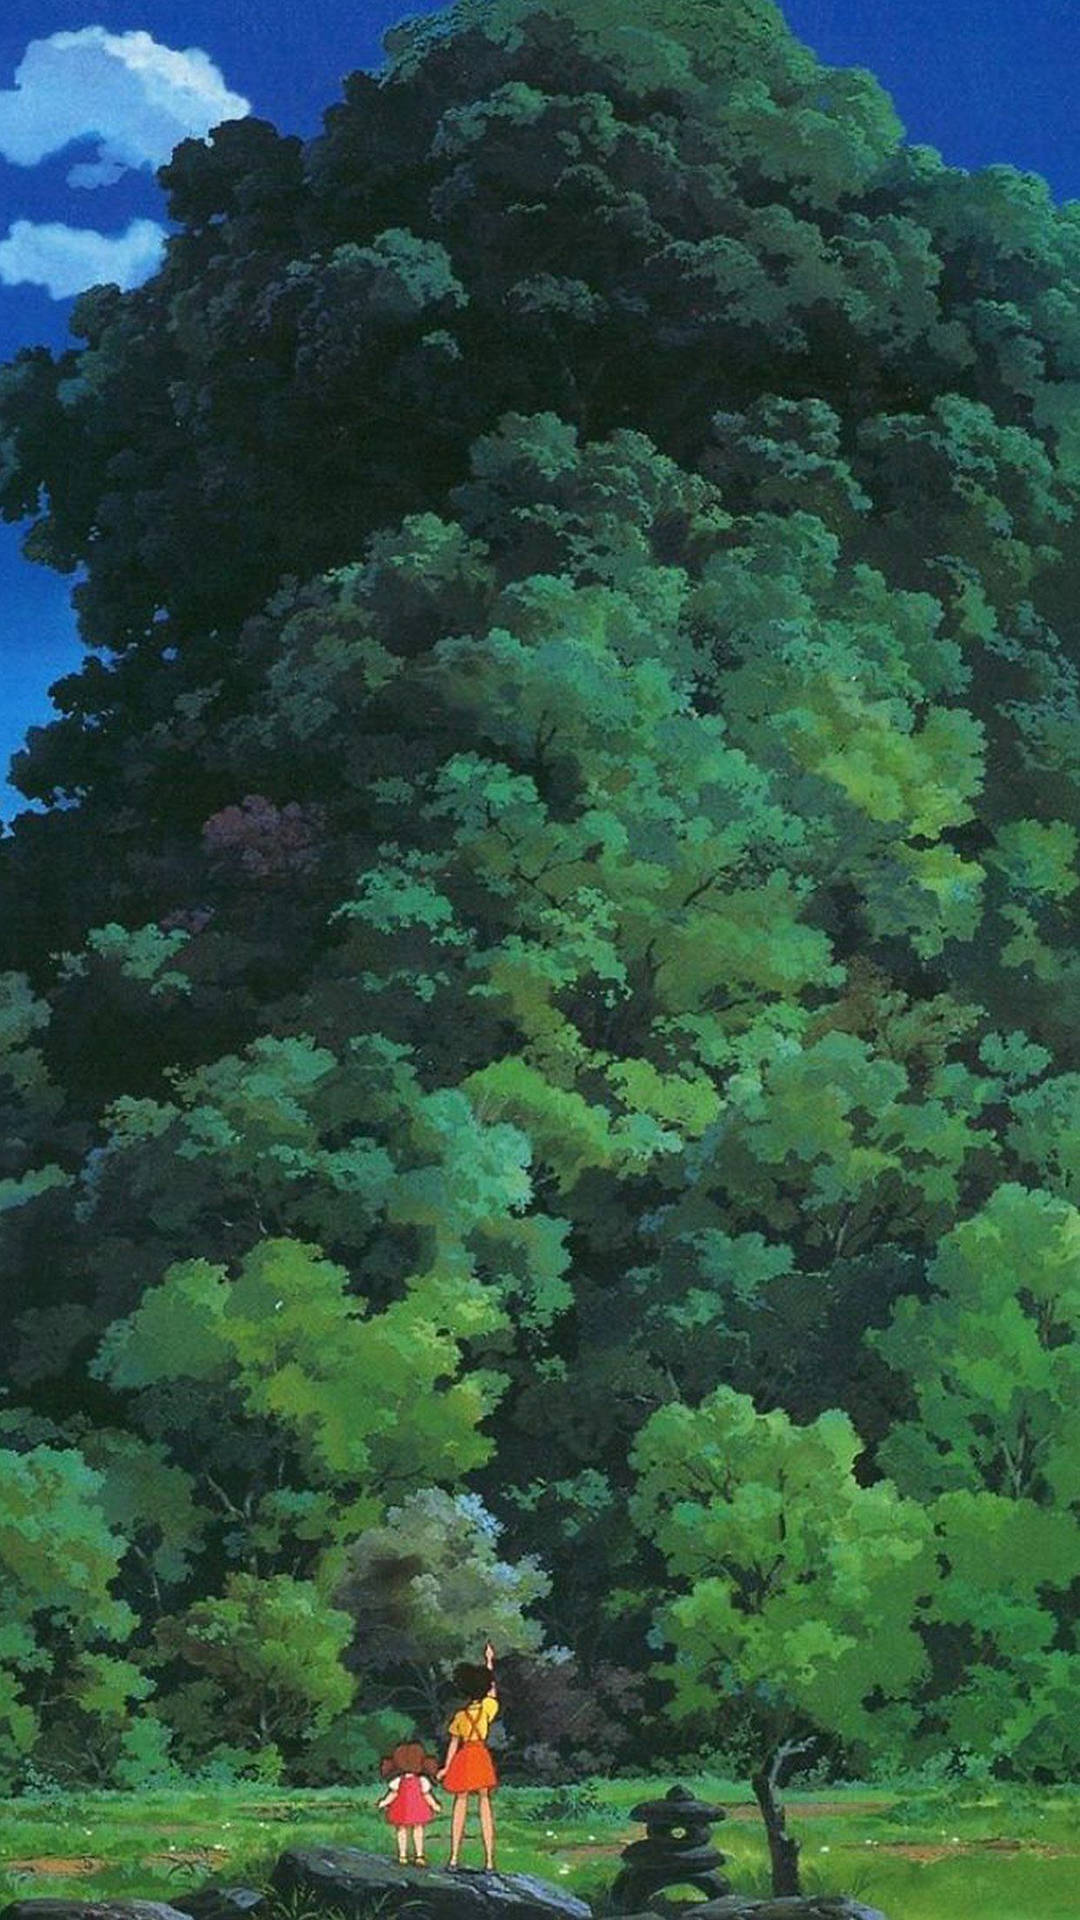 Gönnensie Sich Wunderschöne Studio Ghibli Iphone-hintergrundbilder! Wallpaper